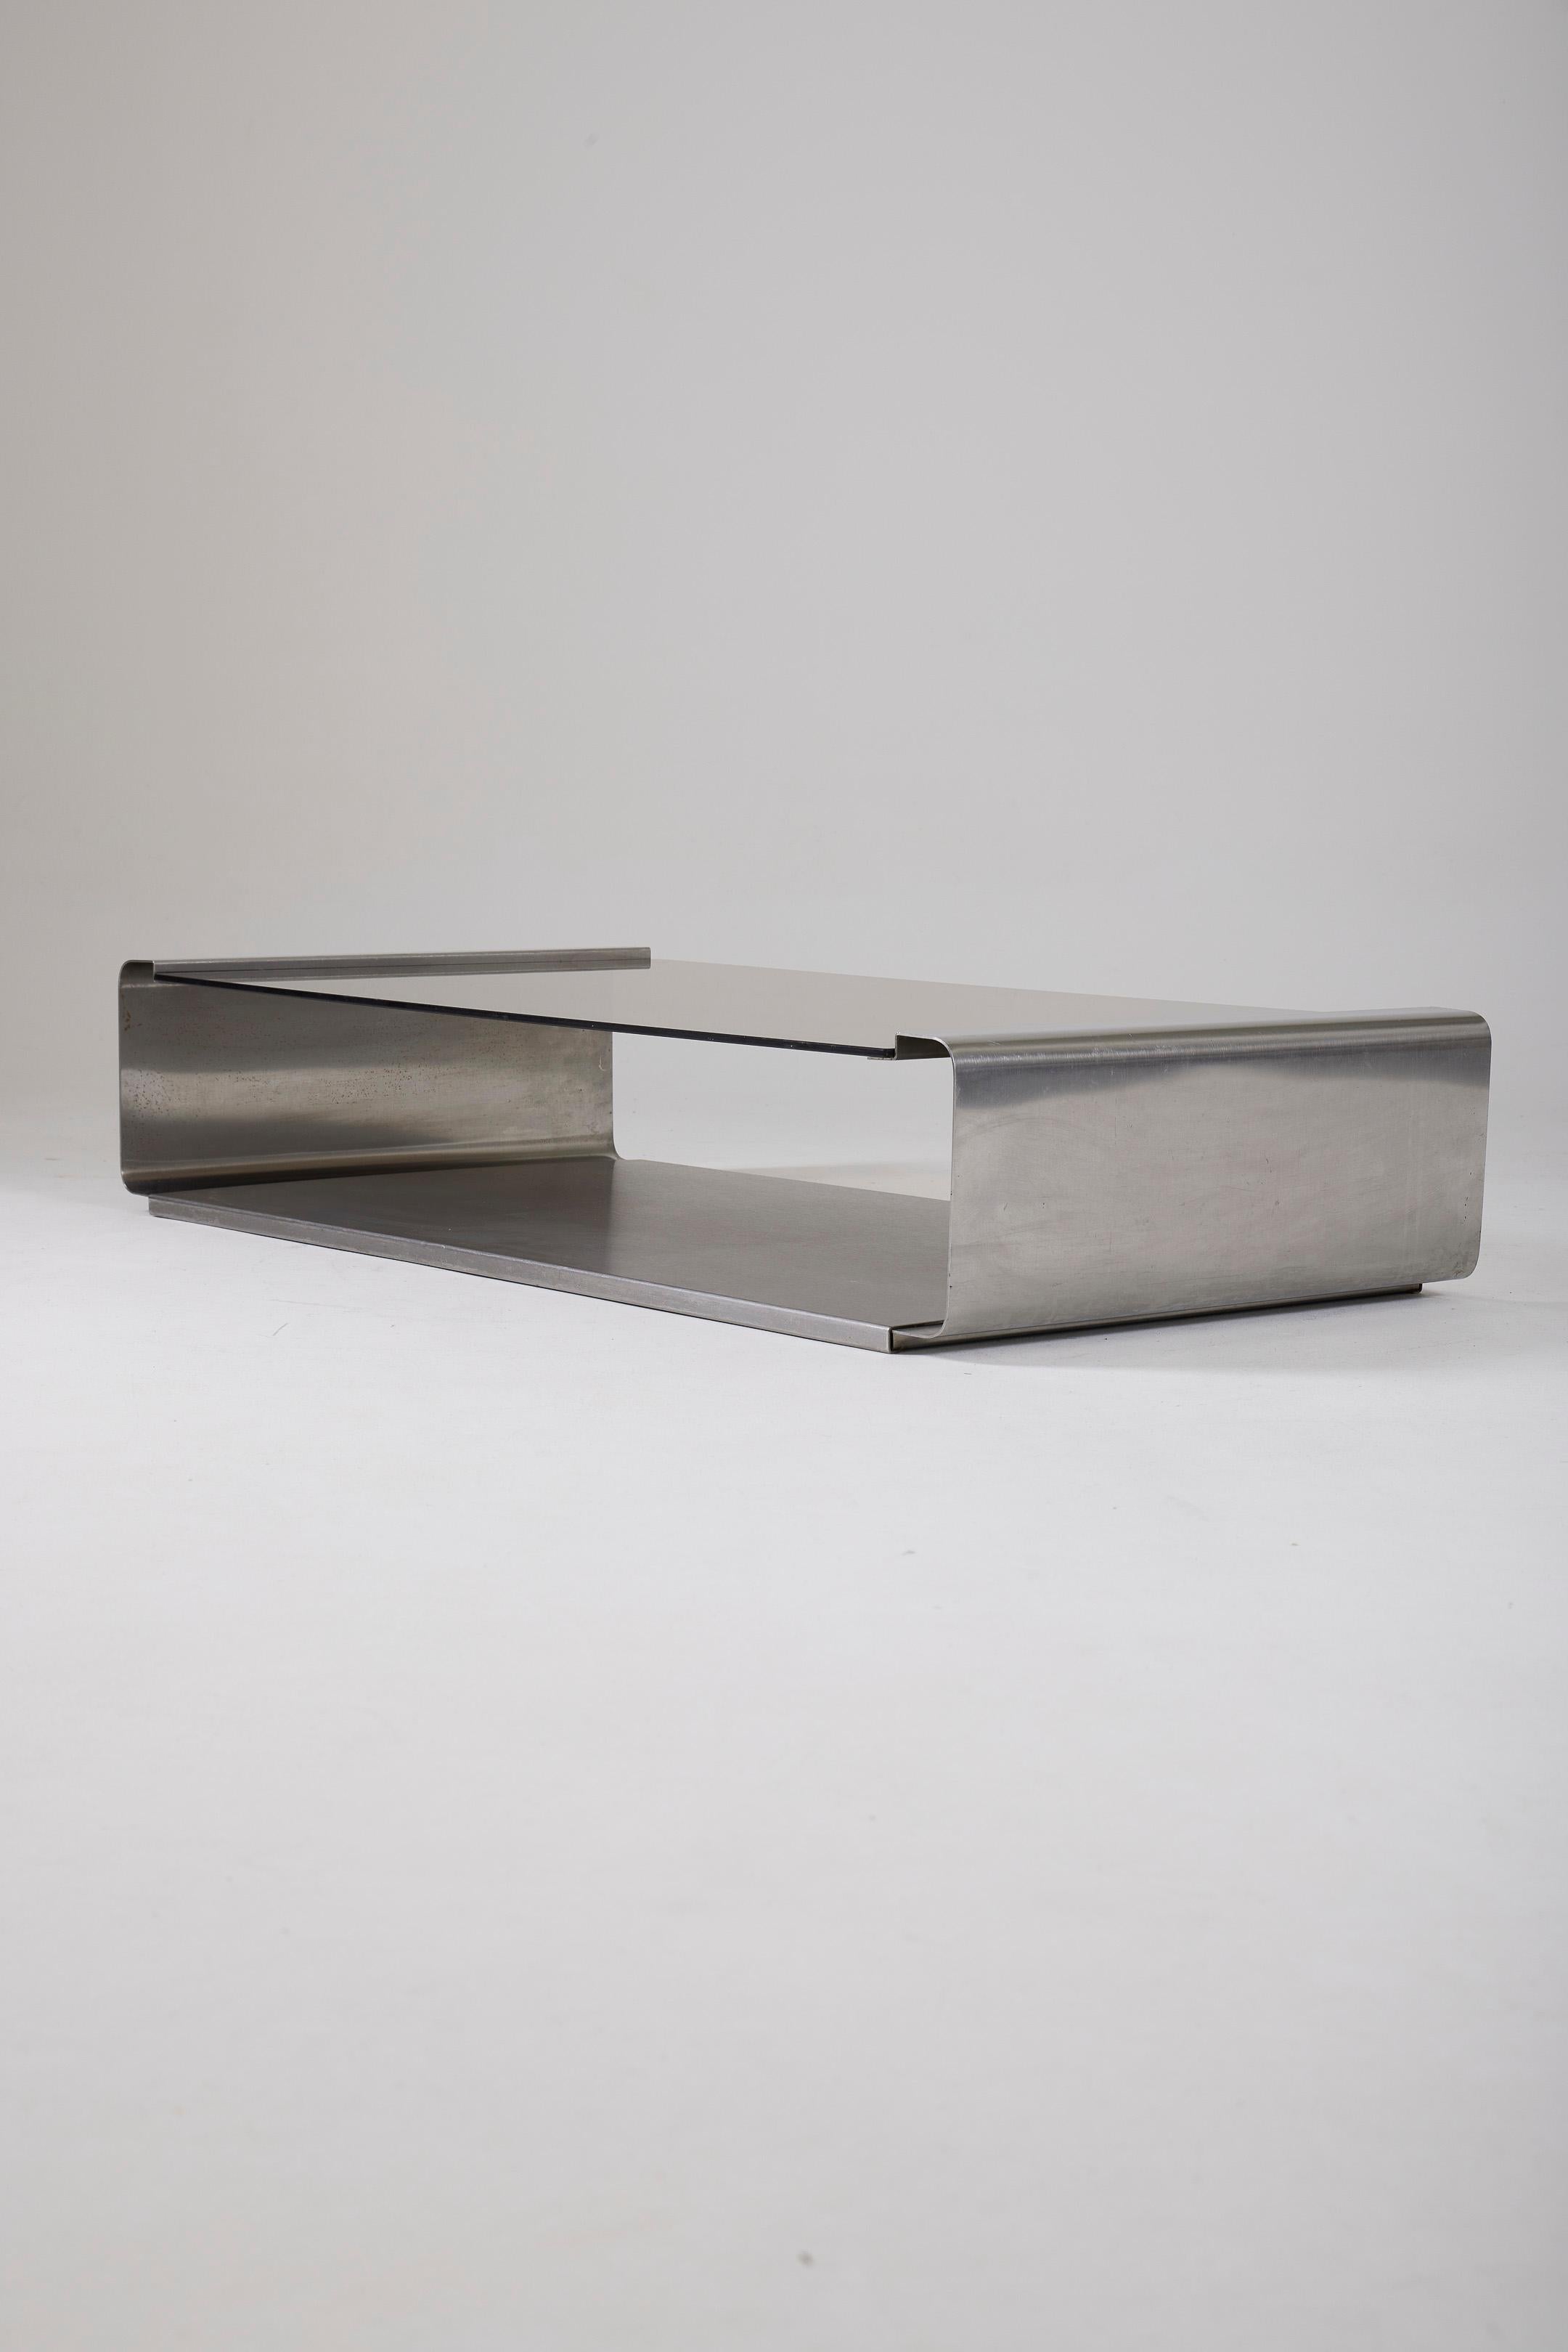  Table basse en métal et verre fumé de la designer française Françoise See Monnet datant des années 1970. Structure en métal brossé et plateau en verre fumé.
LP2845-LP2846